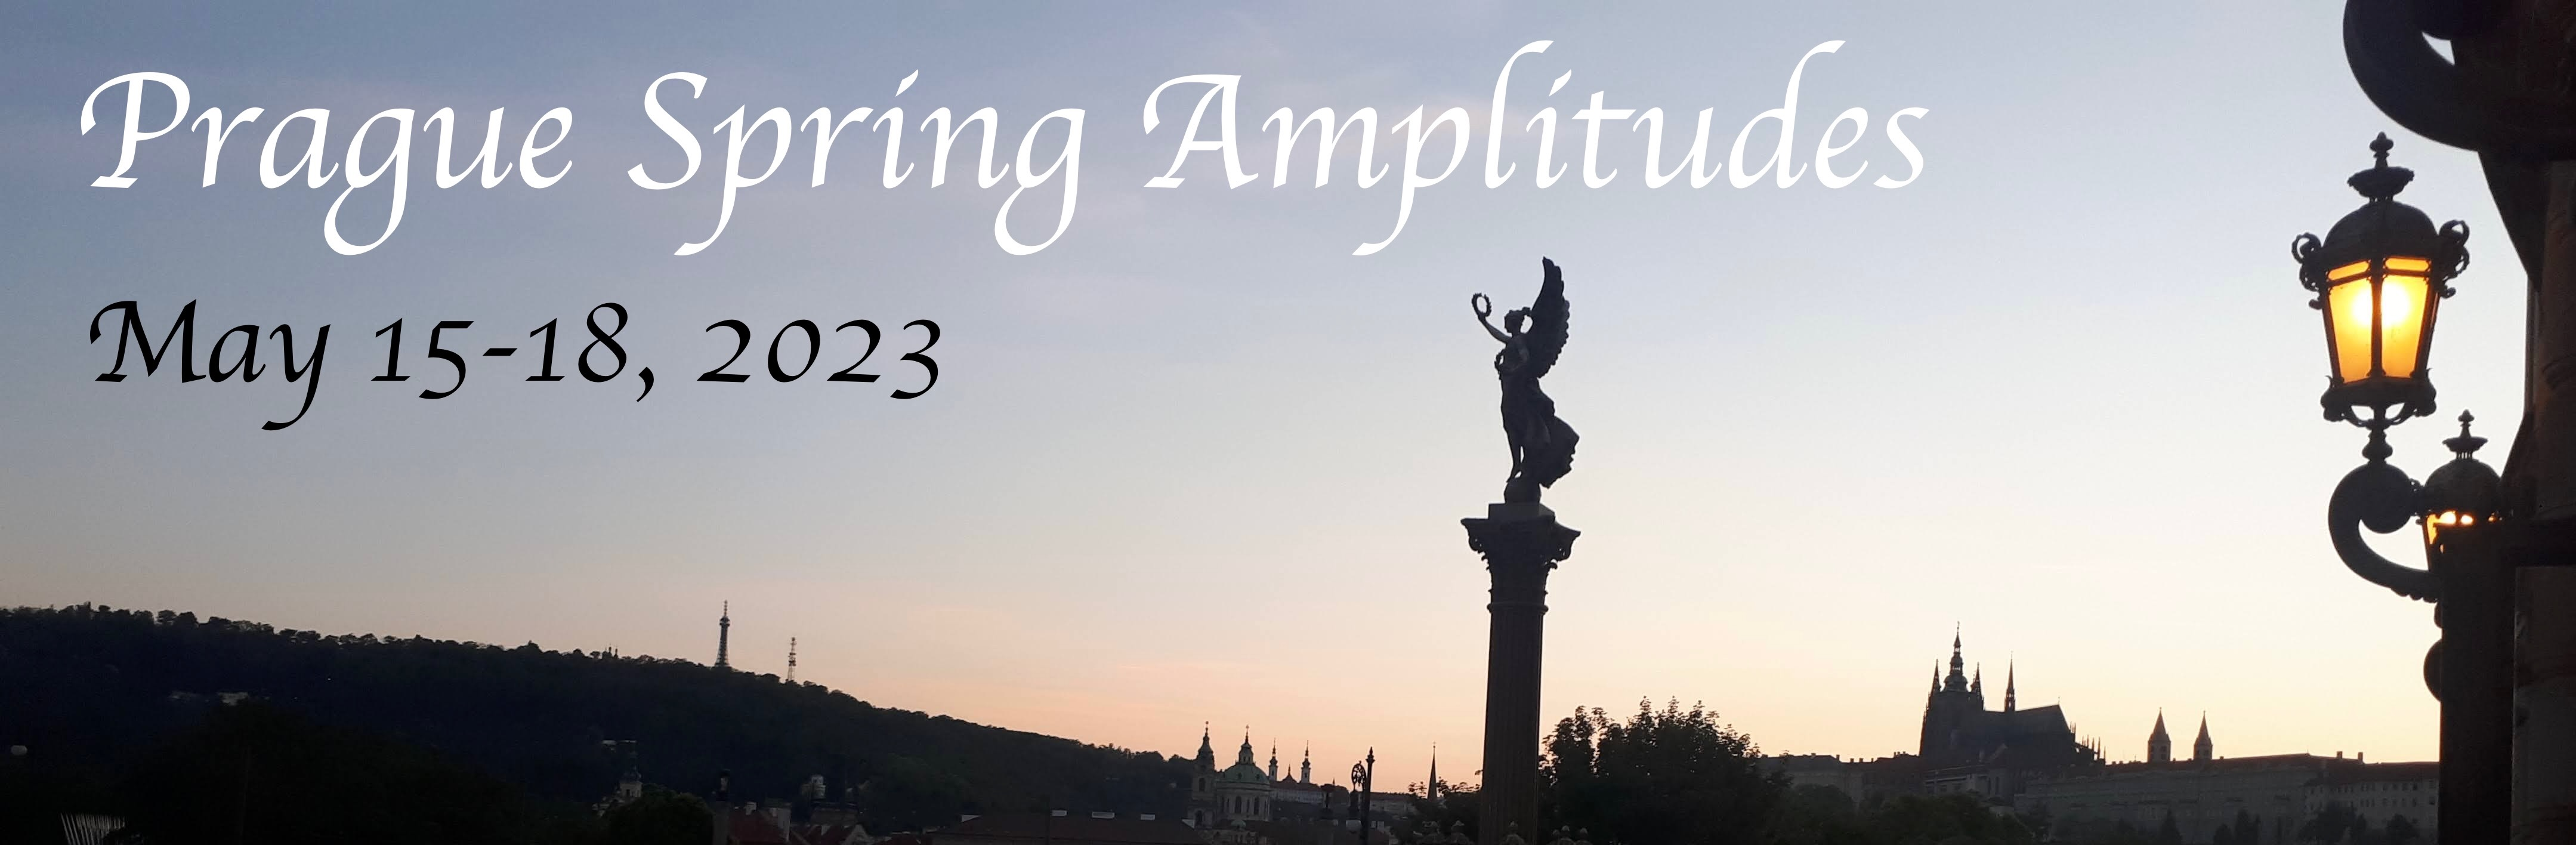 Prague Spring Amplitudes Workshop